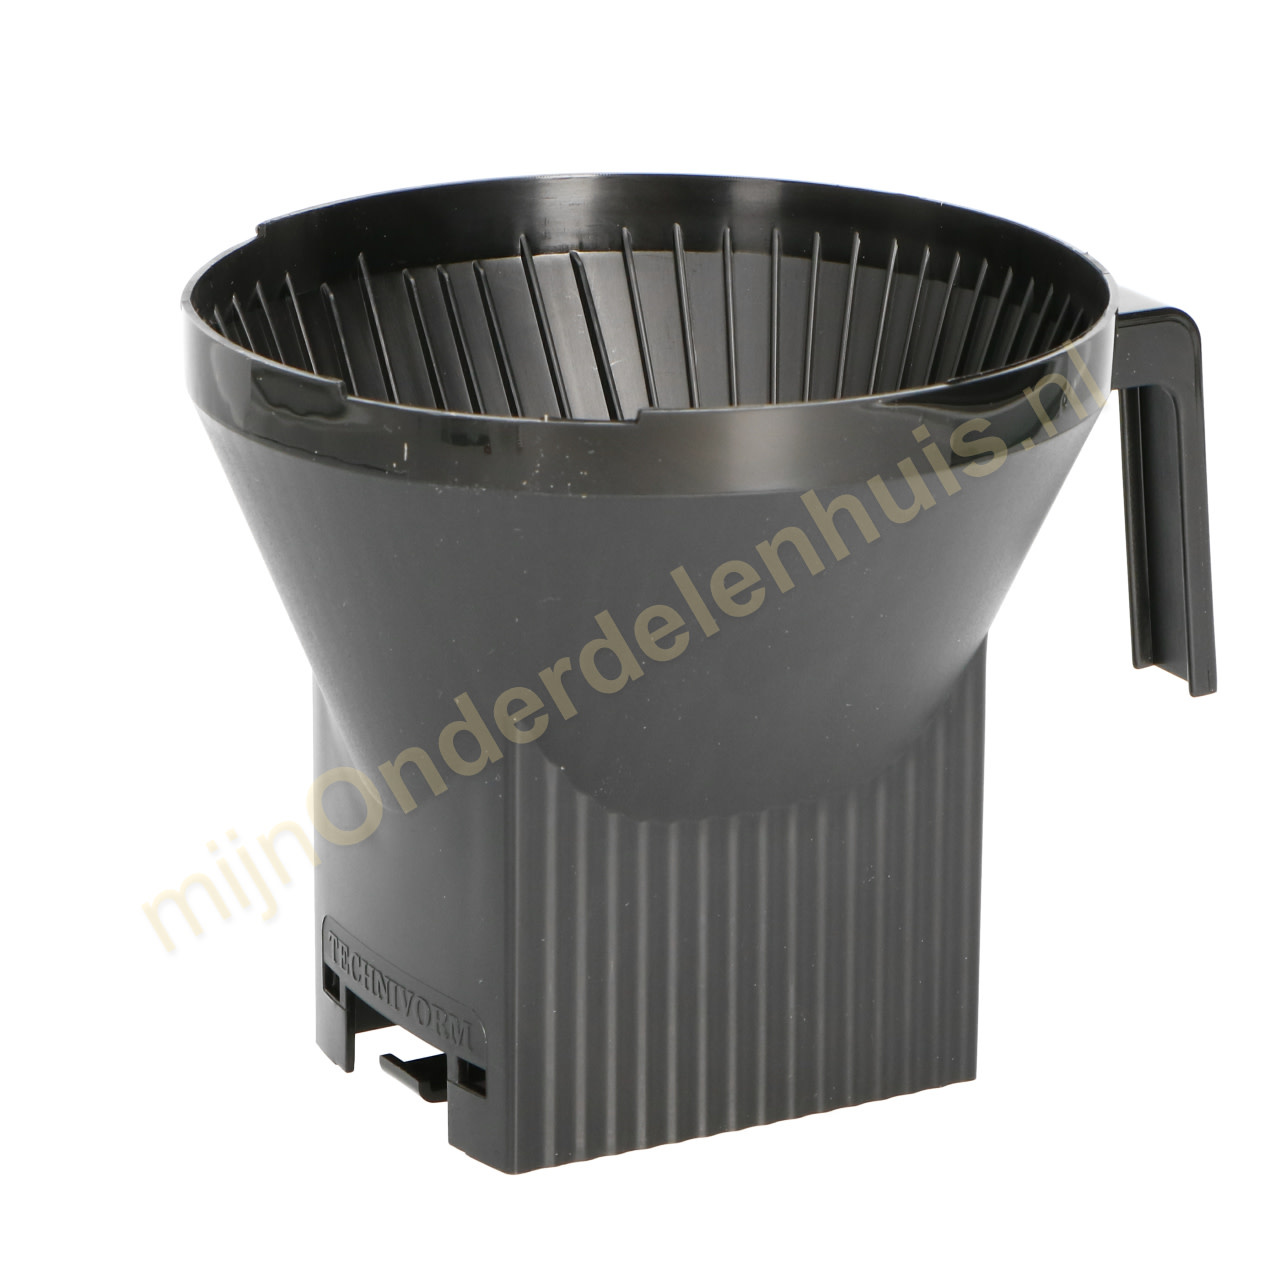 spoelen Hectare Recyclen Douwe Egberts filterhouder van koffiezetter Moccamaster 13253 -  mijnOnderdelenhuis.nl